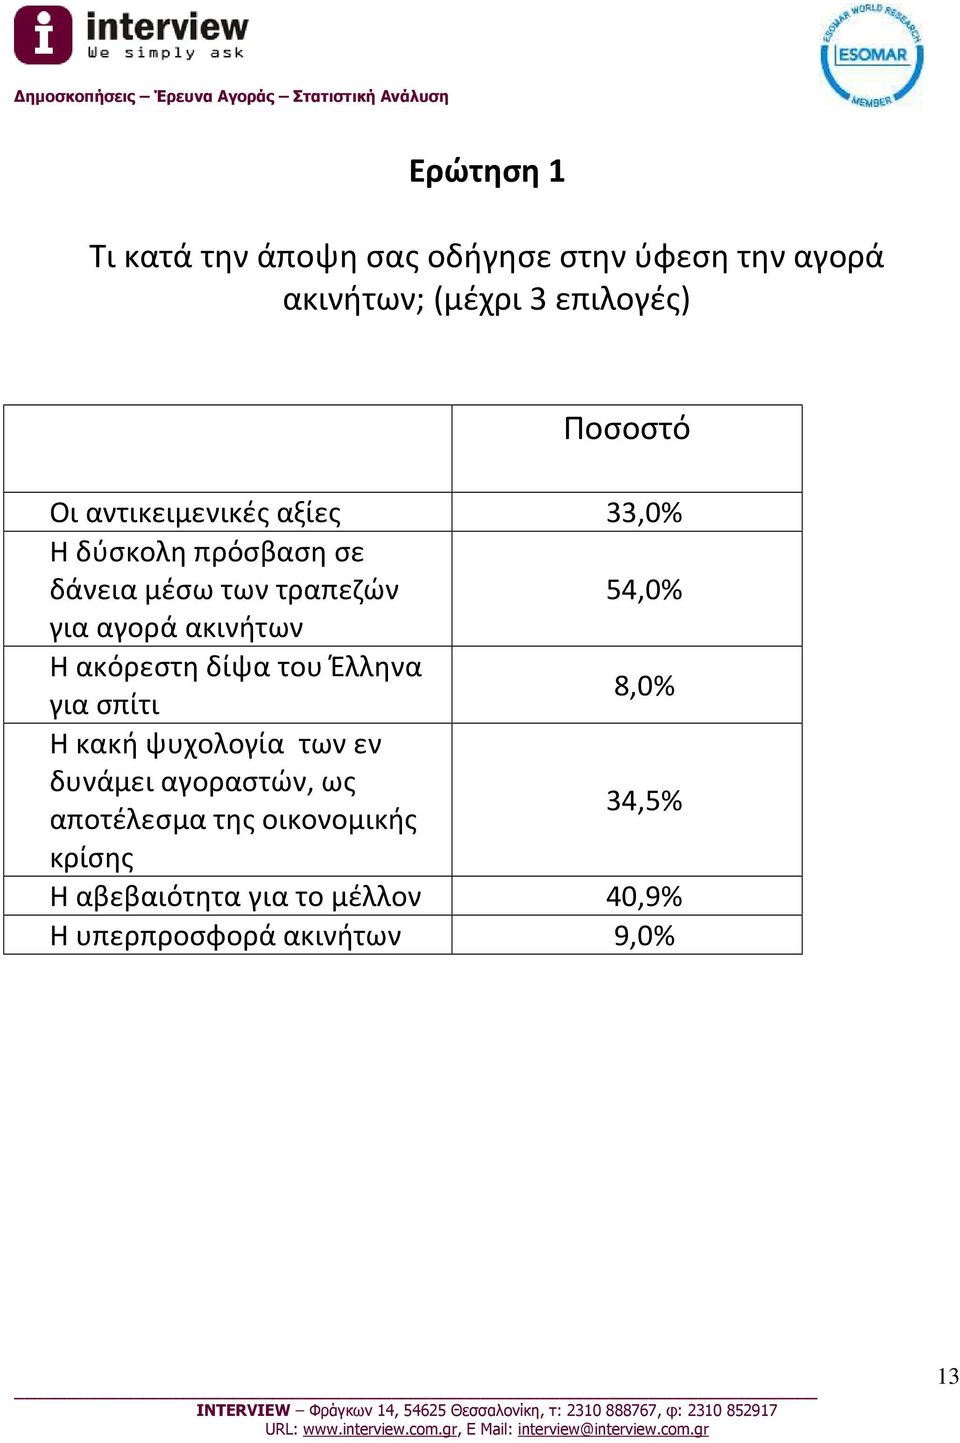 ακινήτων Η ακόρεστη δίψα του Έλληνα 8,0% για σπίτι Η κακή ψυχολογία των εν δυνάμει αγοραστών, ως